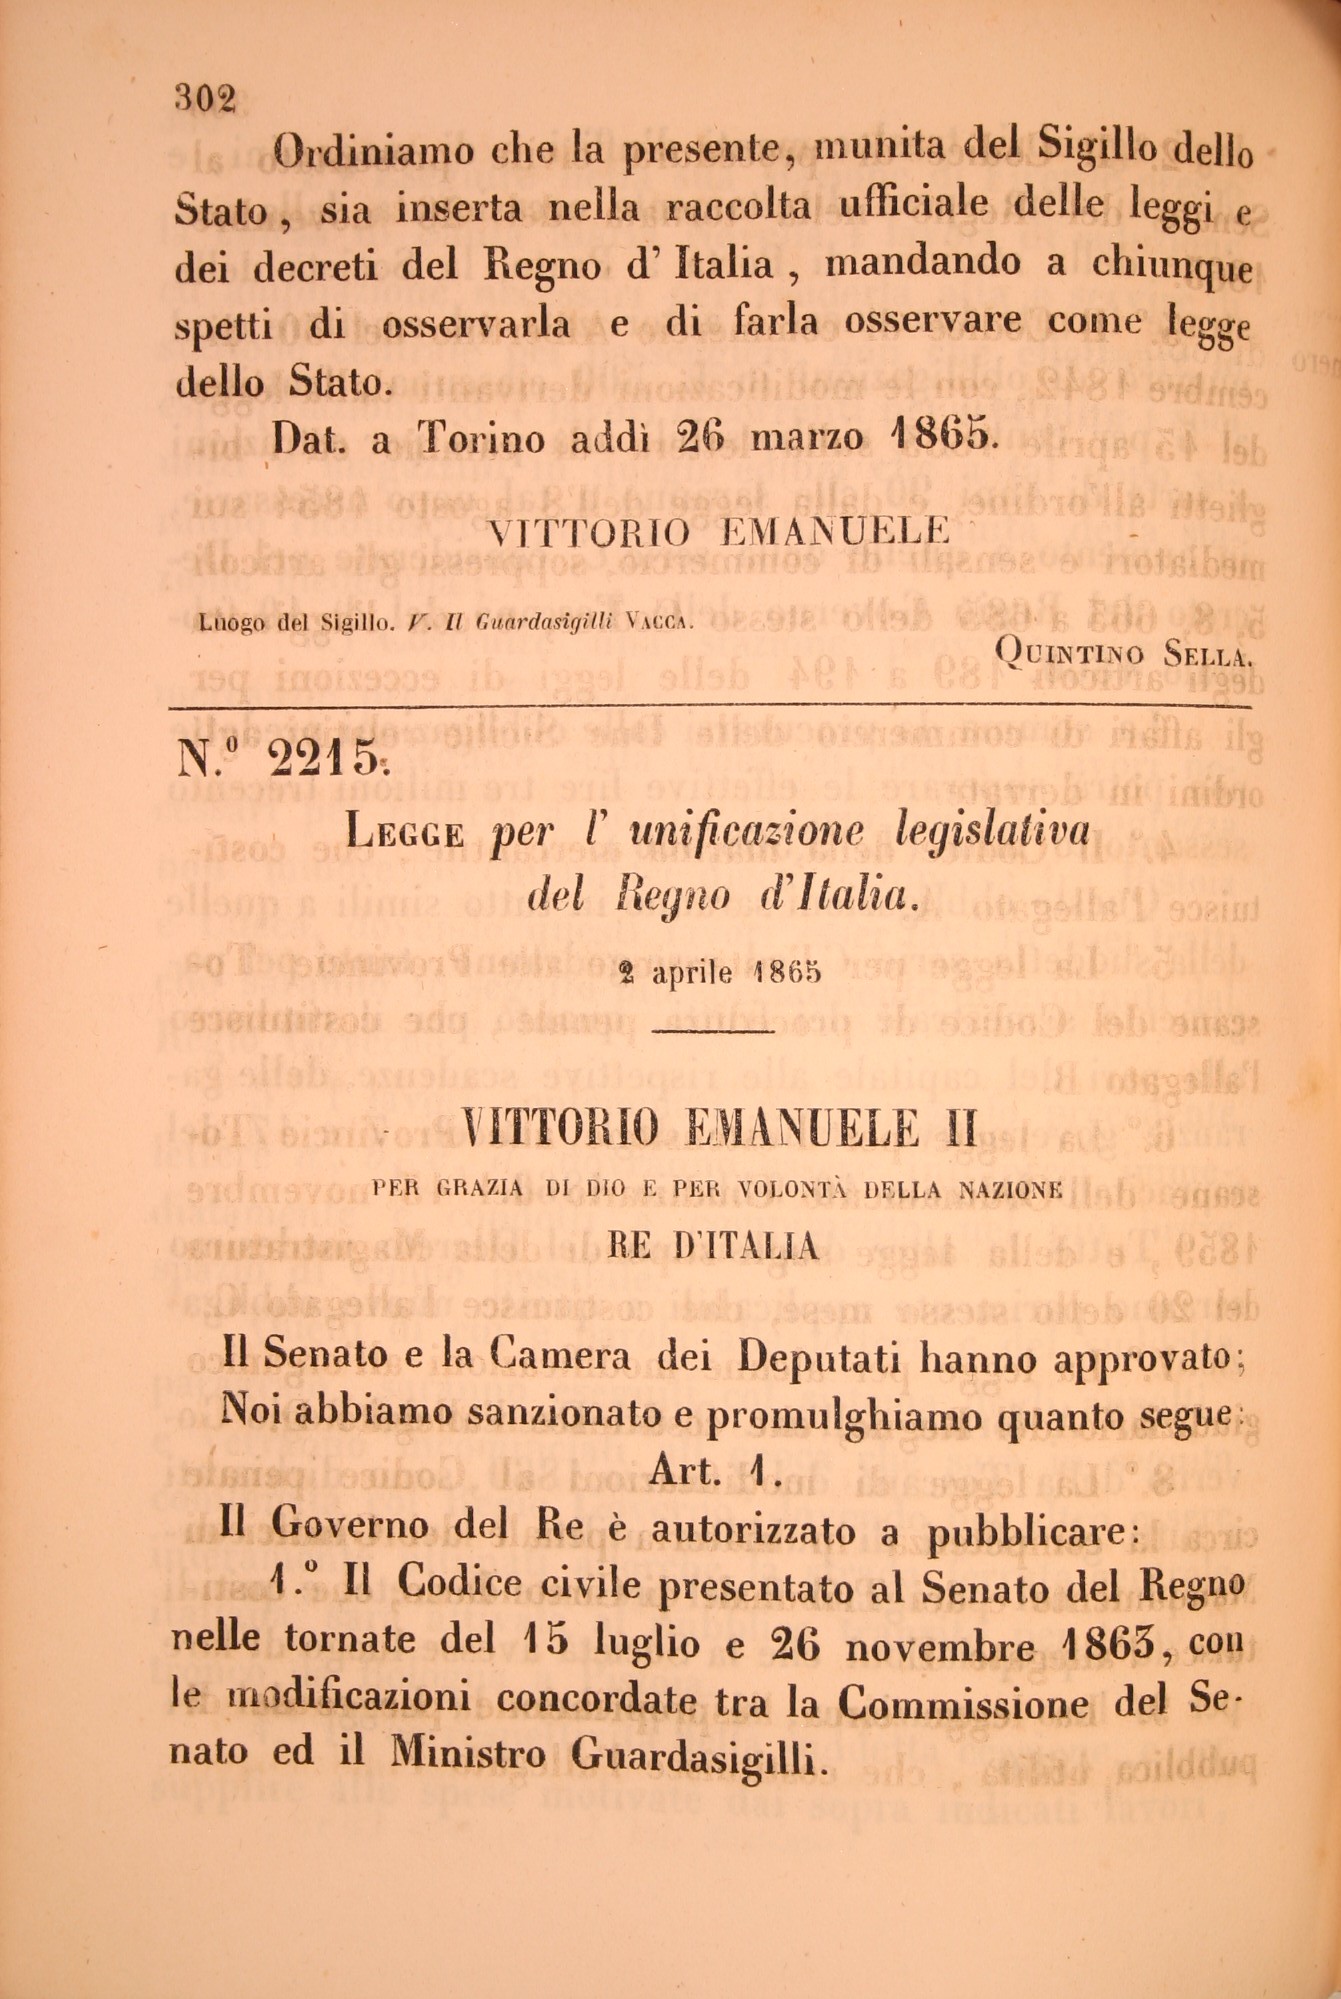 Legge per l'unificazione legislativa del Regno d'Italia